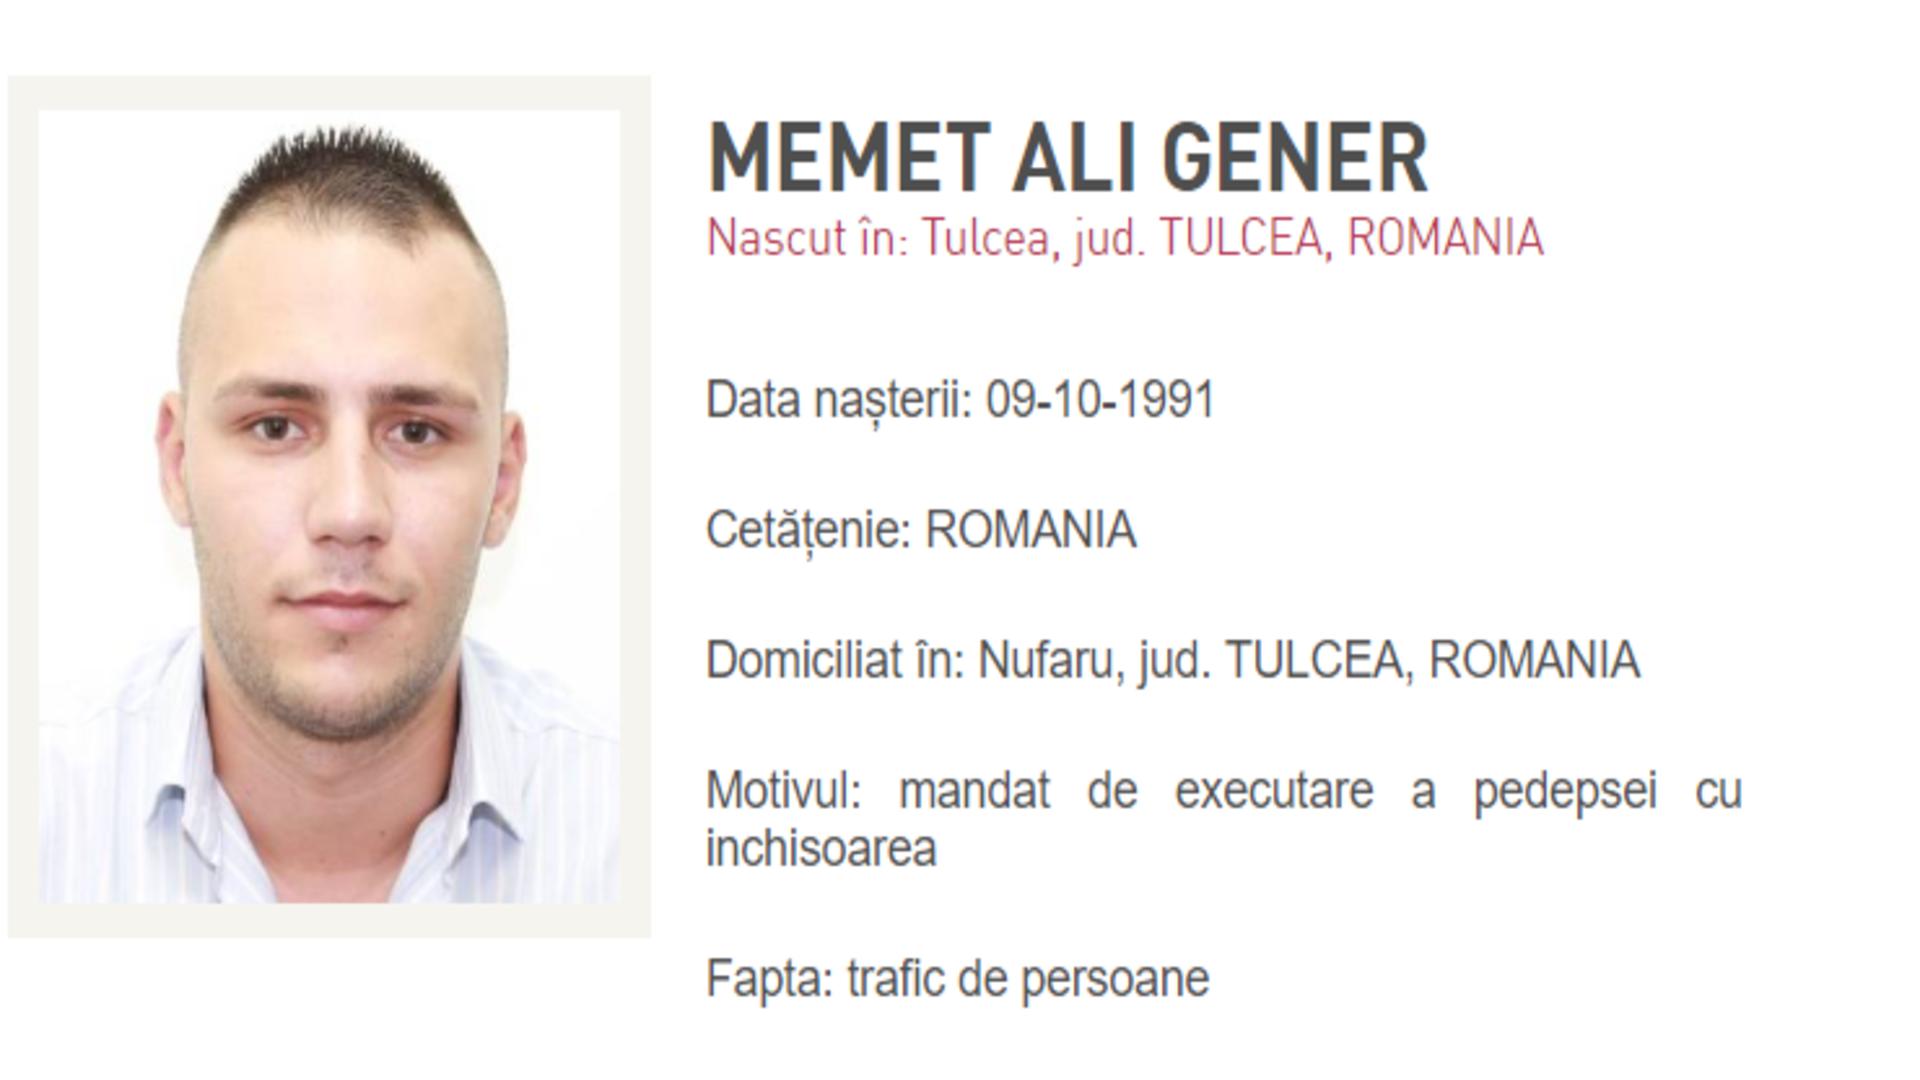 Urmărit internațional pentru proxenetism, adus în România. Bărbatul de 32 de ani are de ispășit o pedeapsă de 7 ani și 2 luni de închisoare